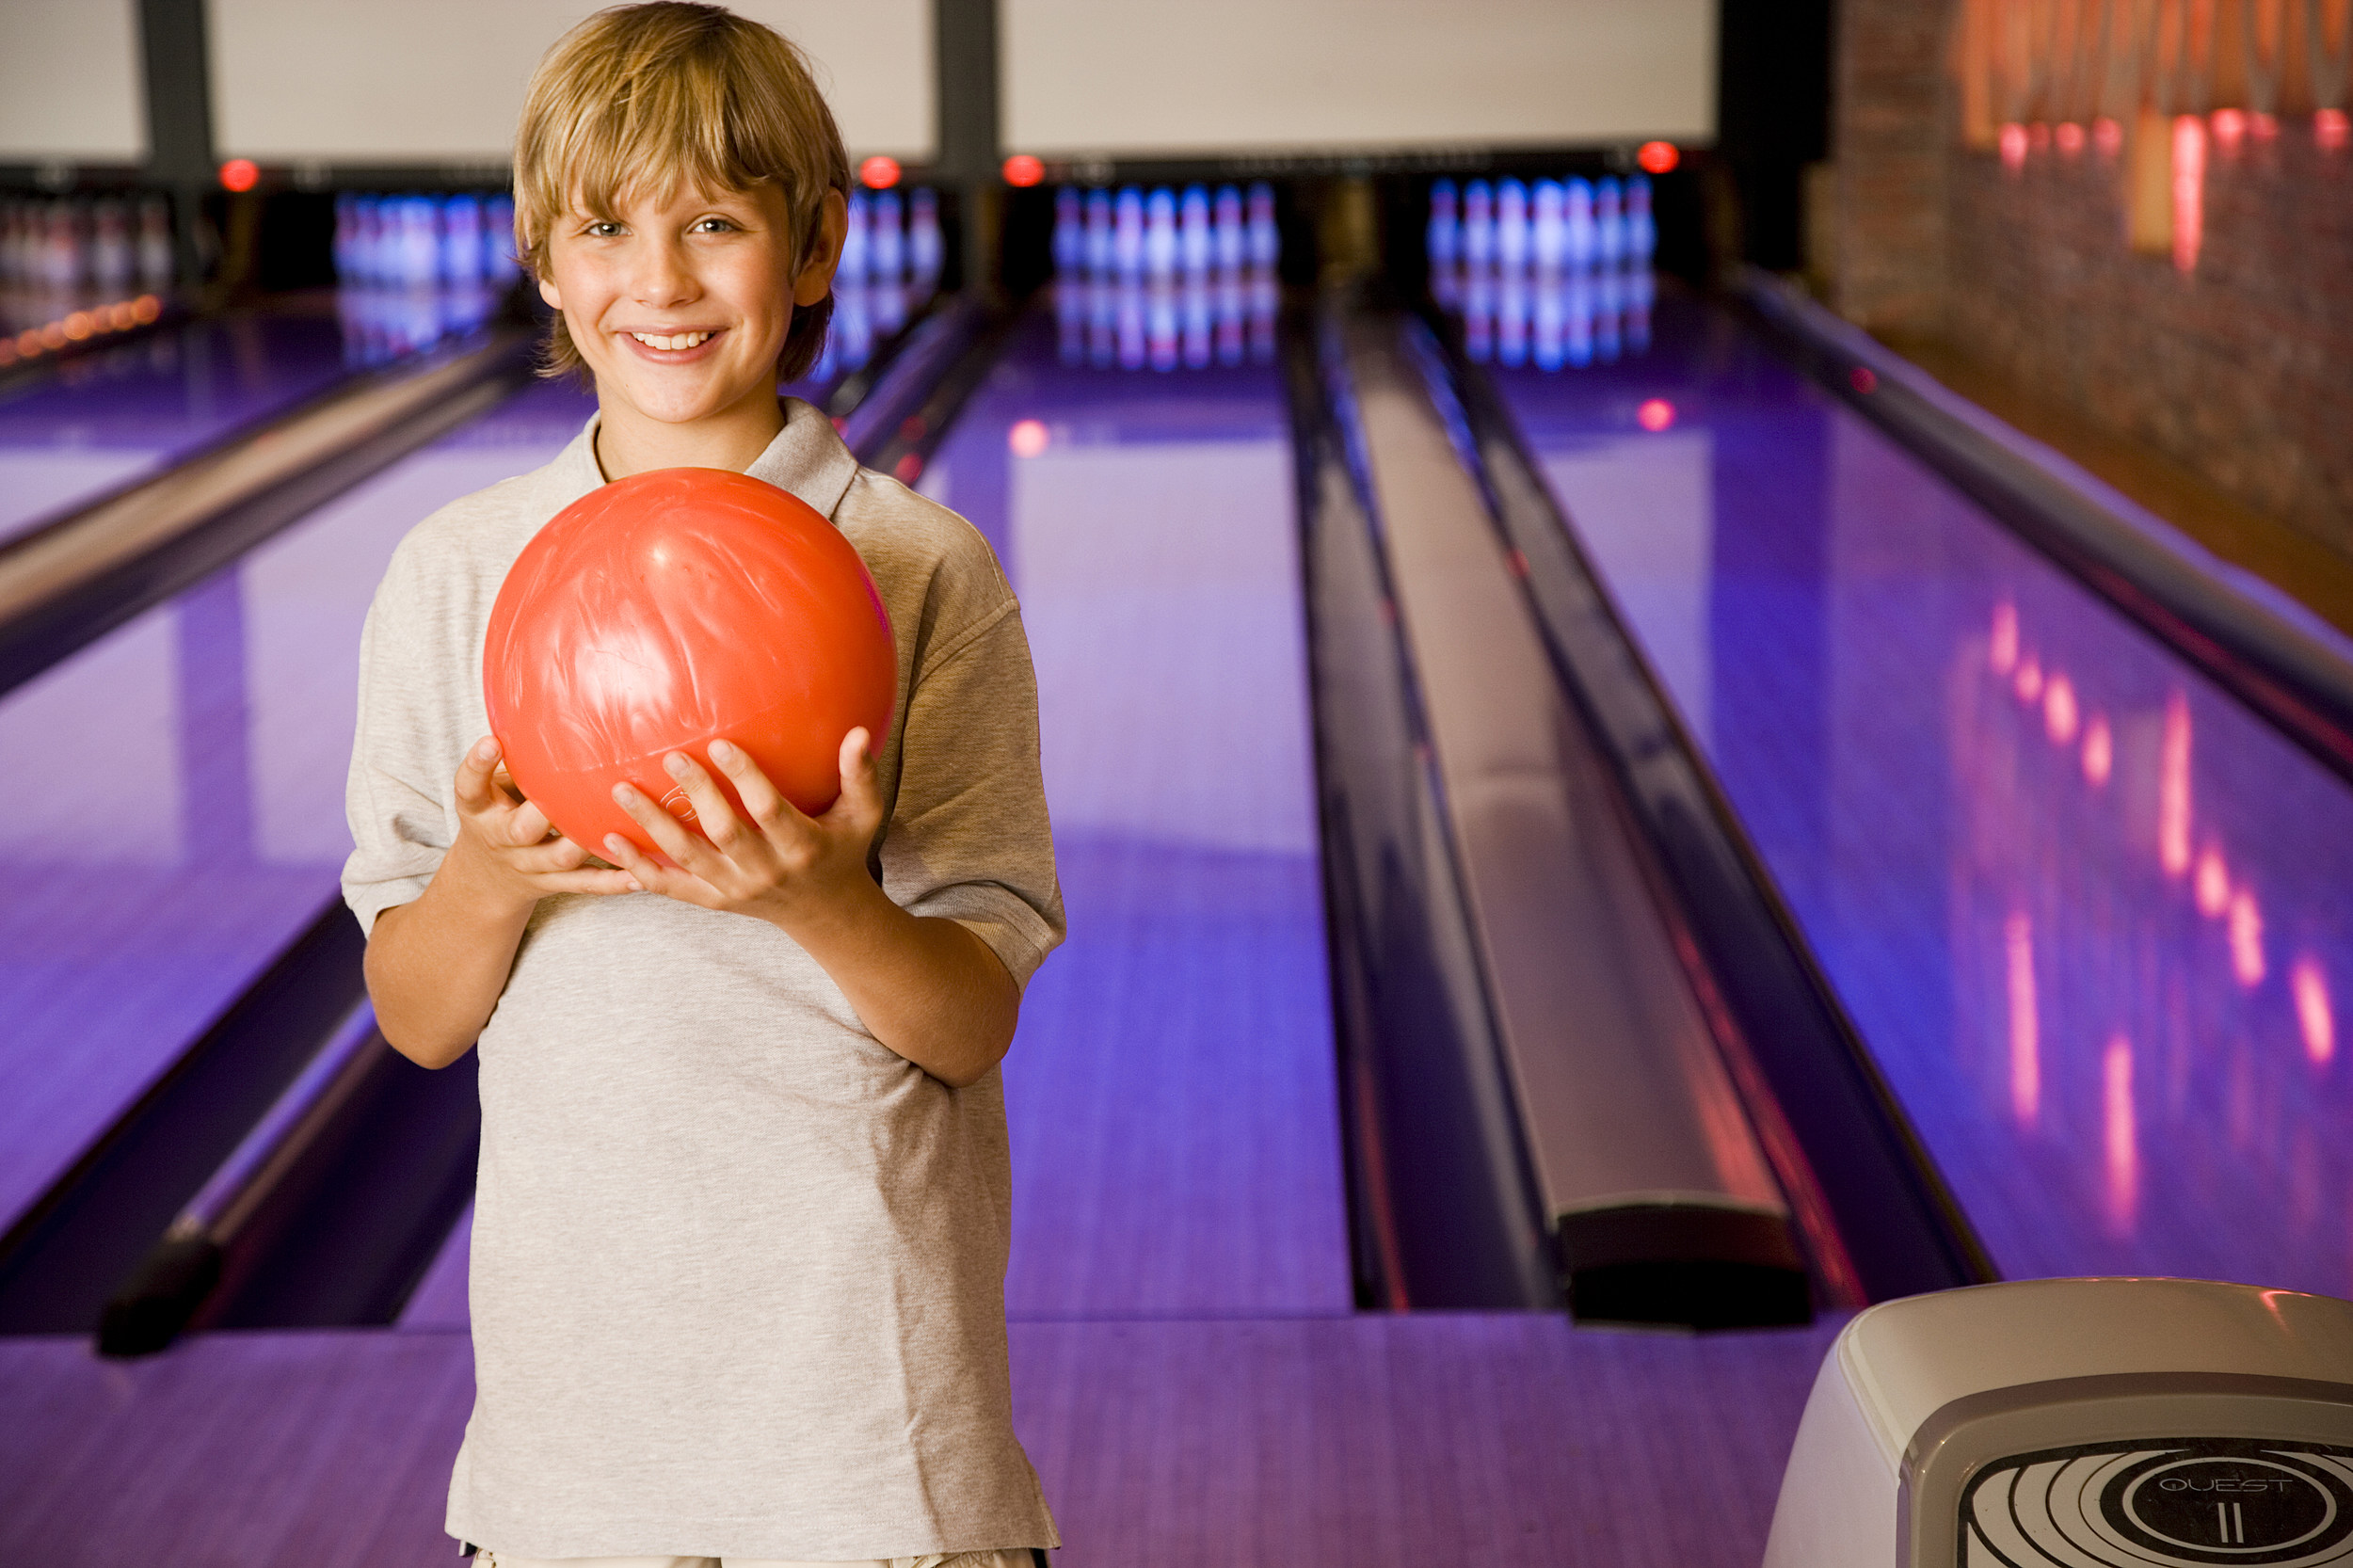 amateur bowling tournament franchise cost